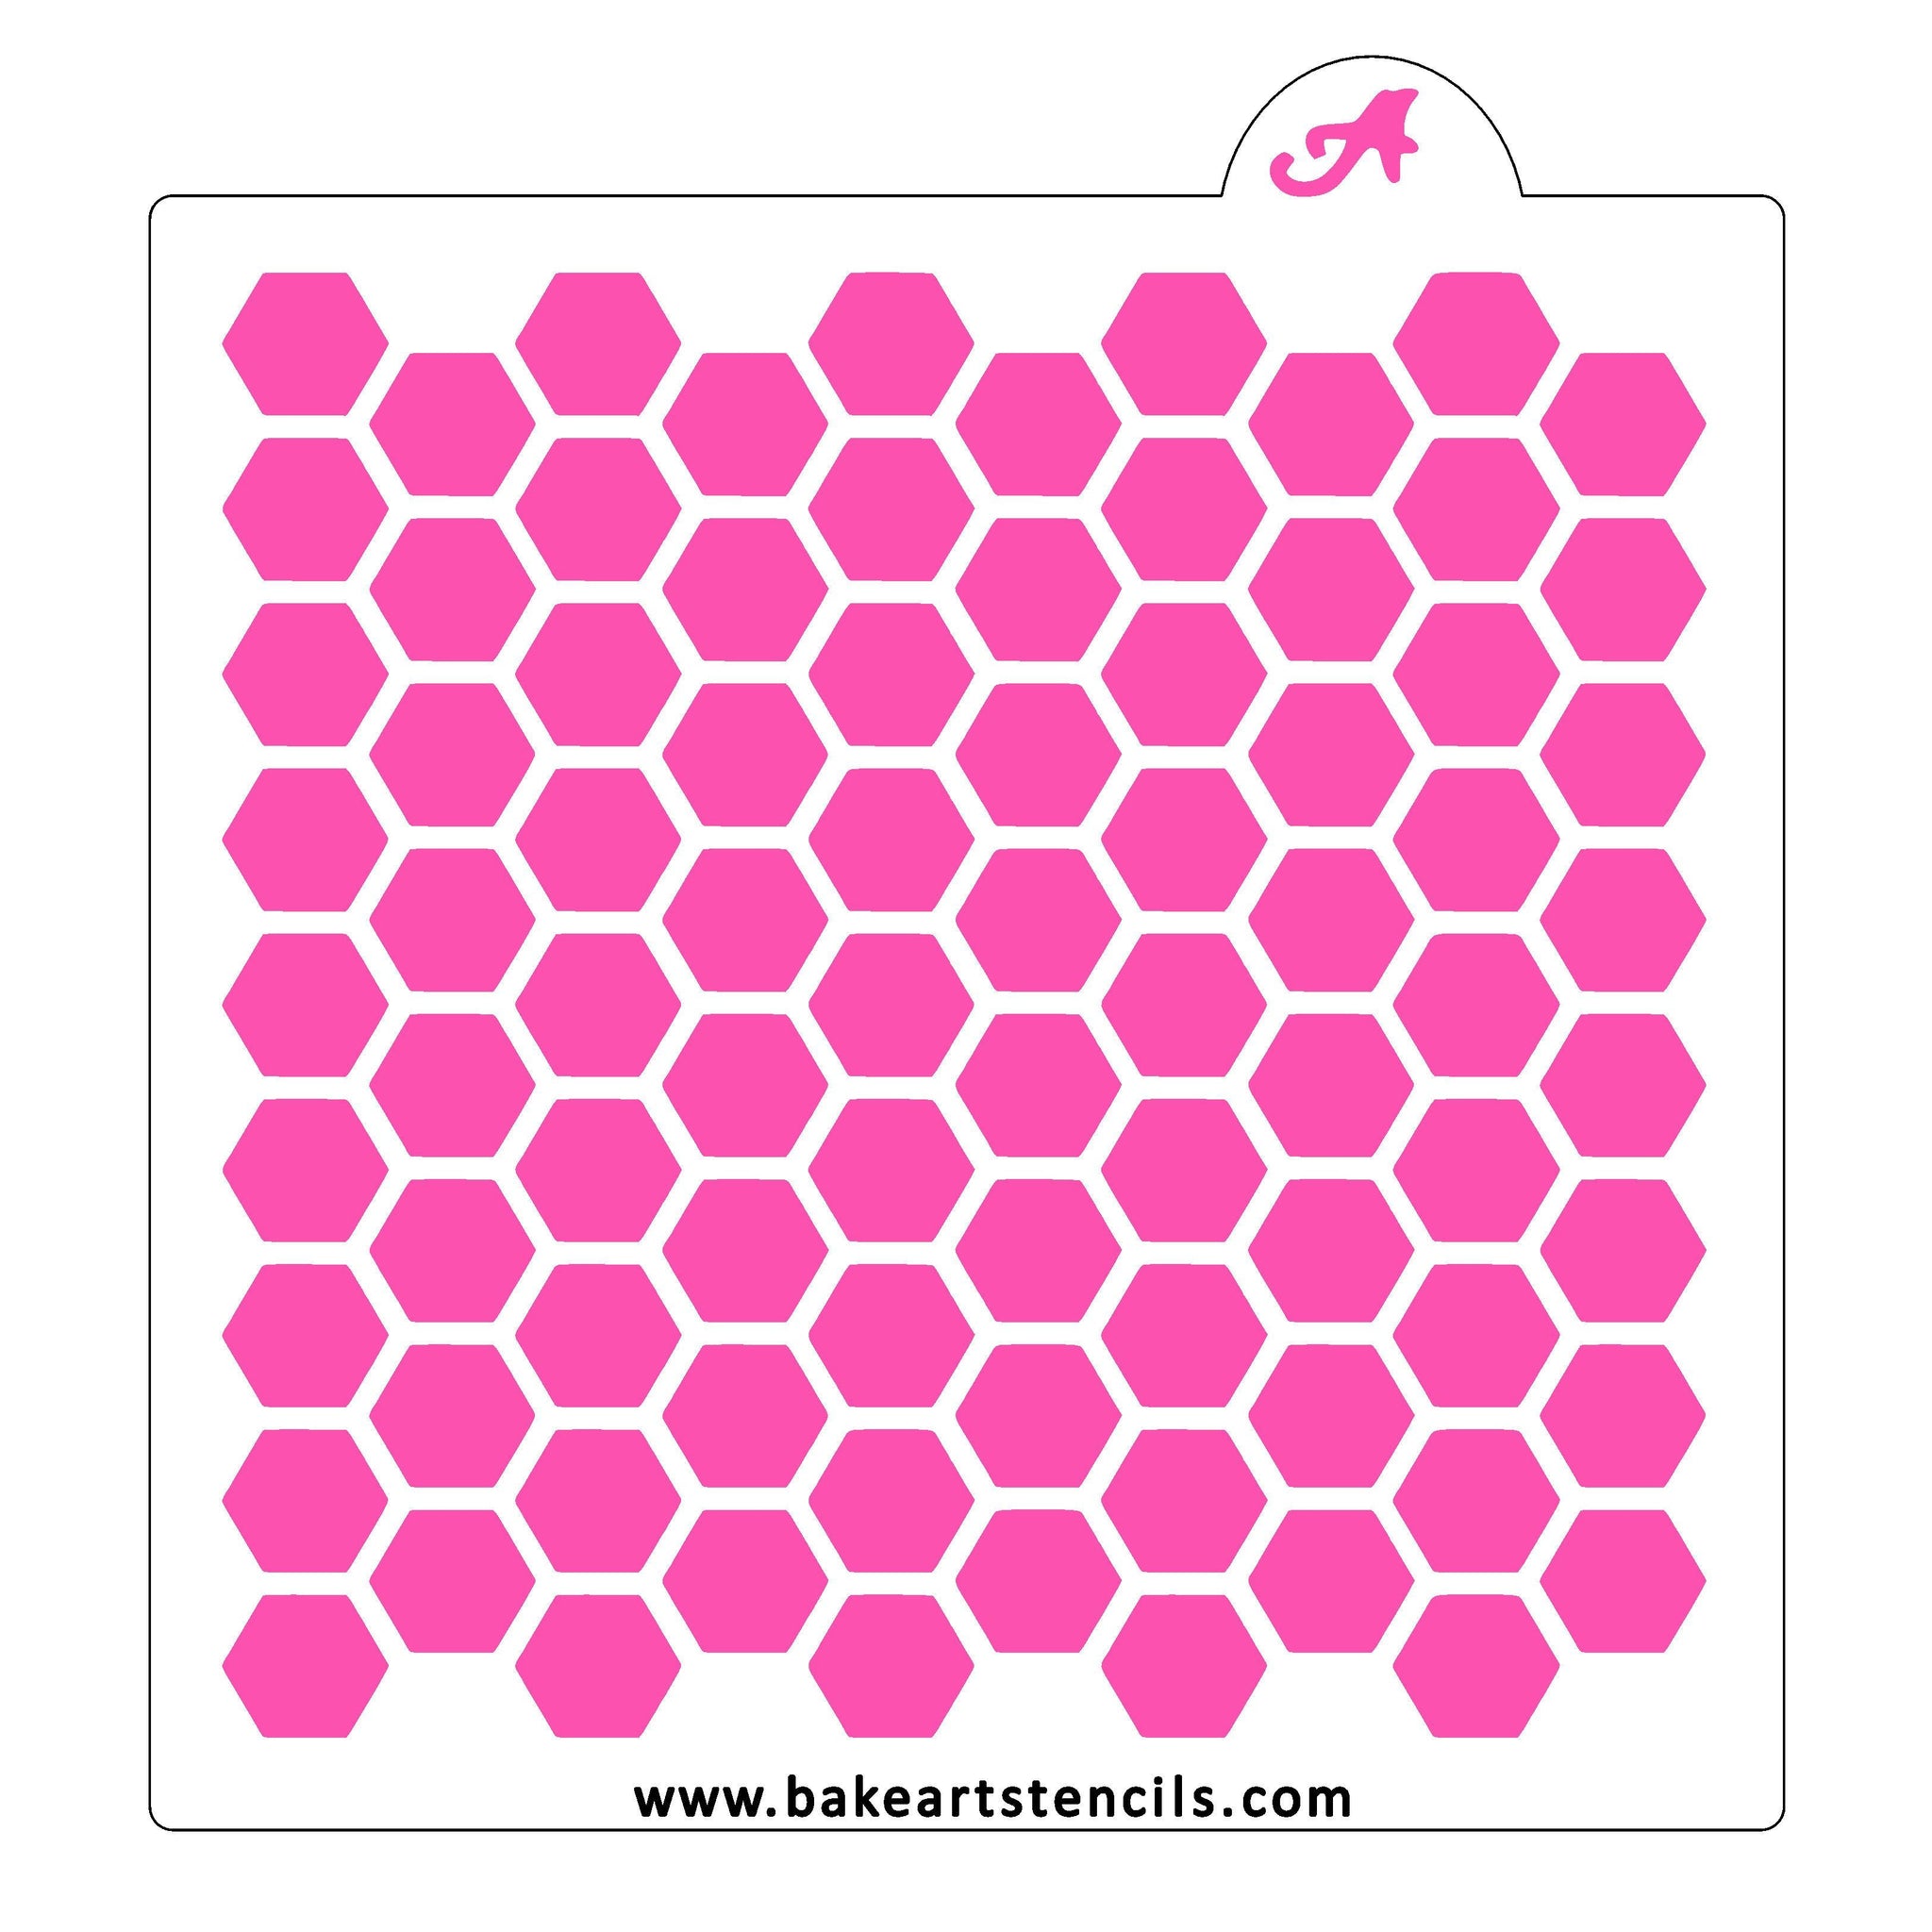 Honeycomb Pattern Stencil  Hexagon Cookie Stencil - bakeartstencils